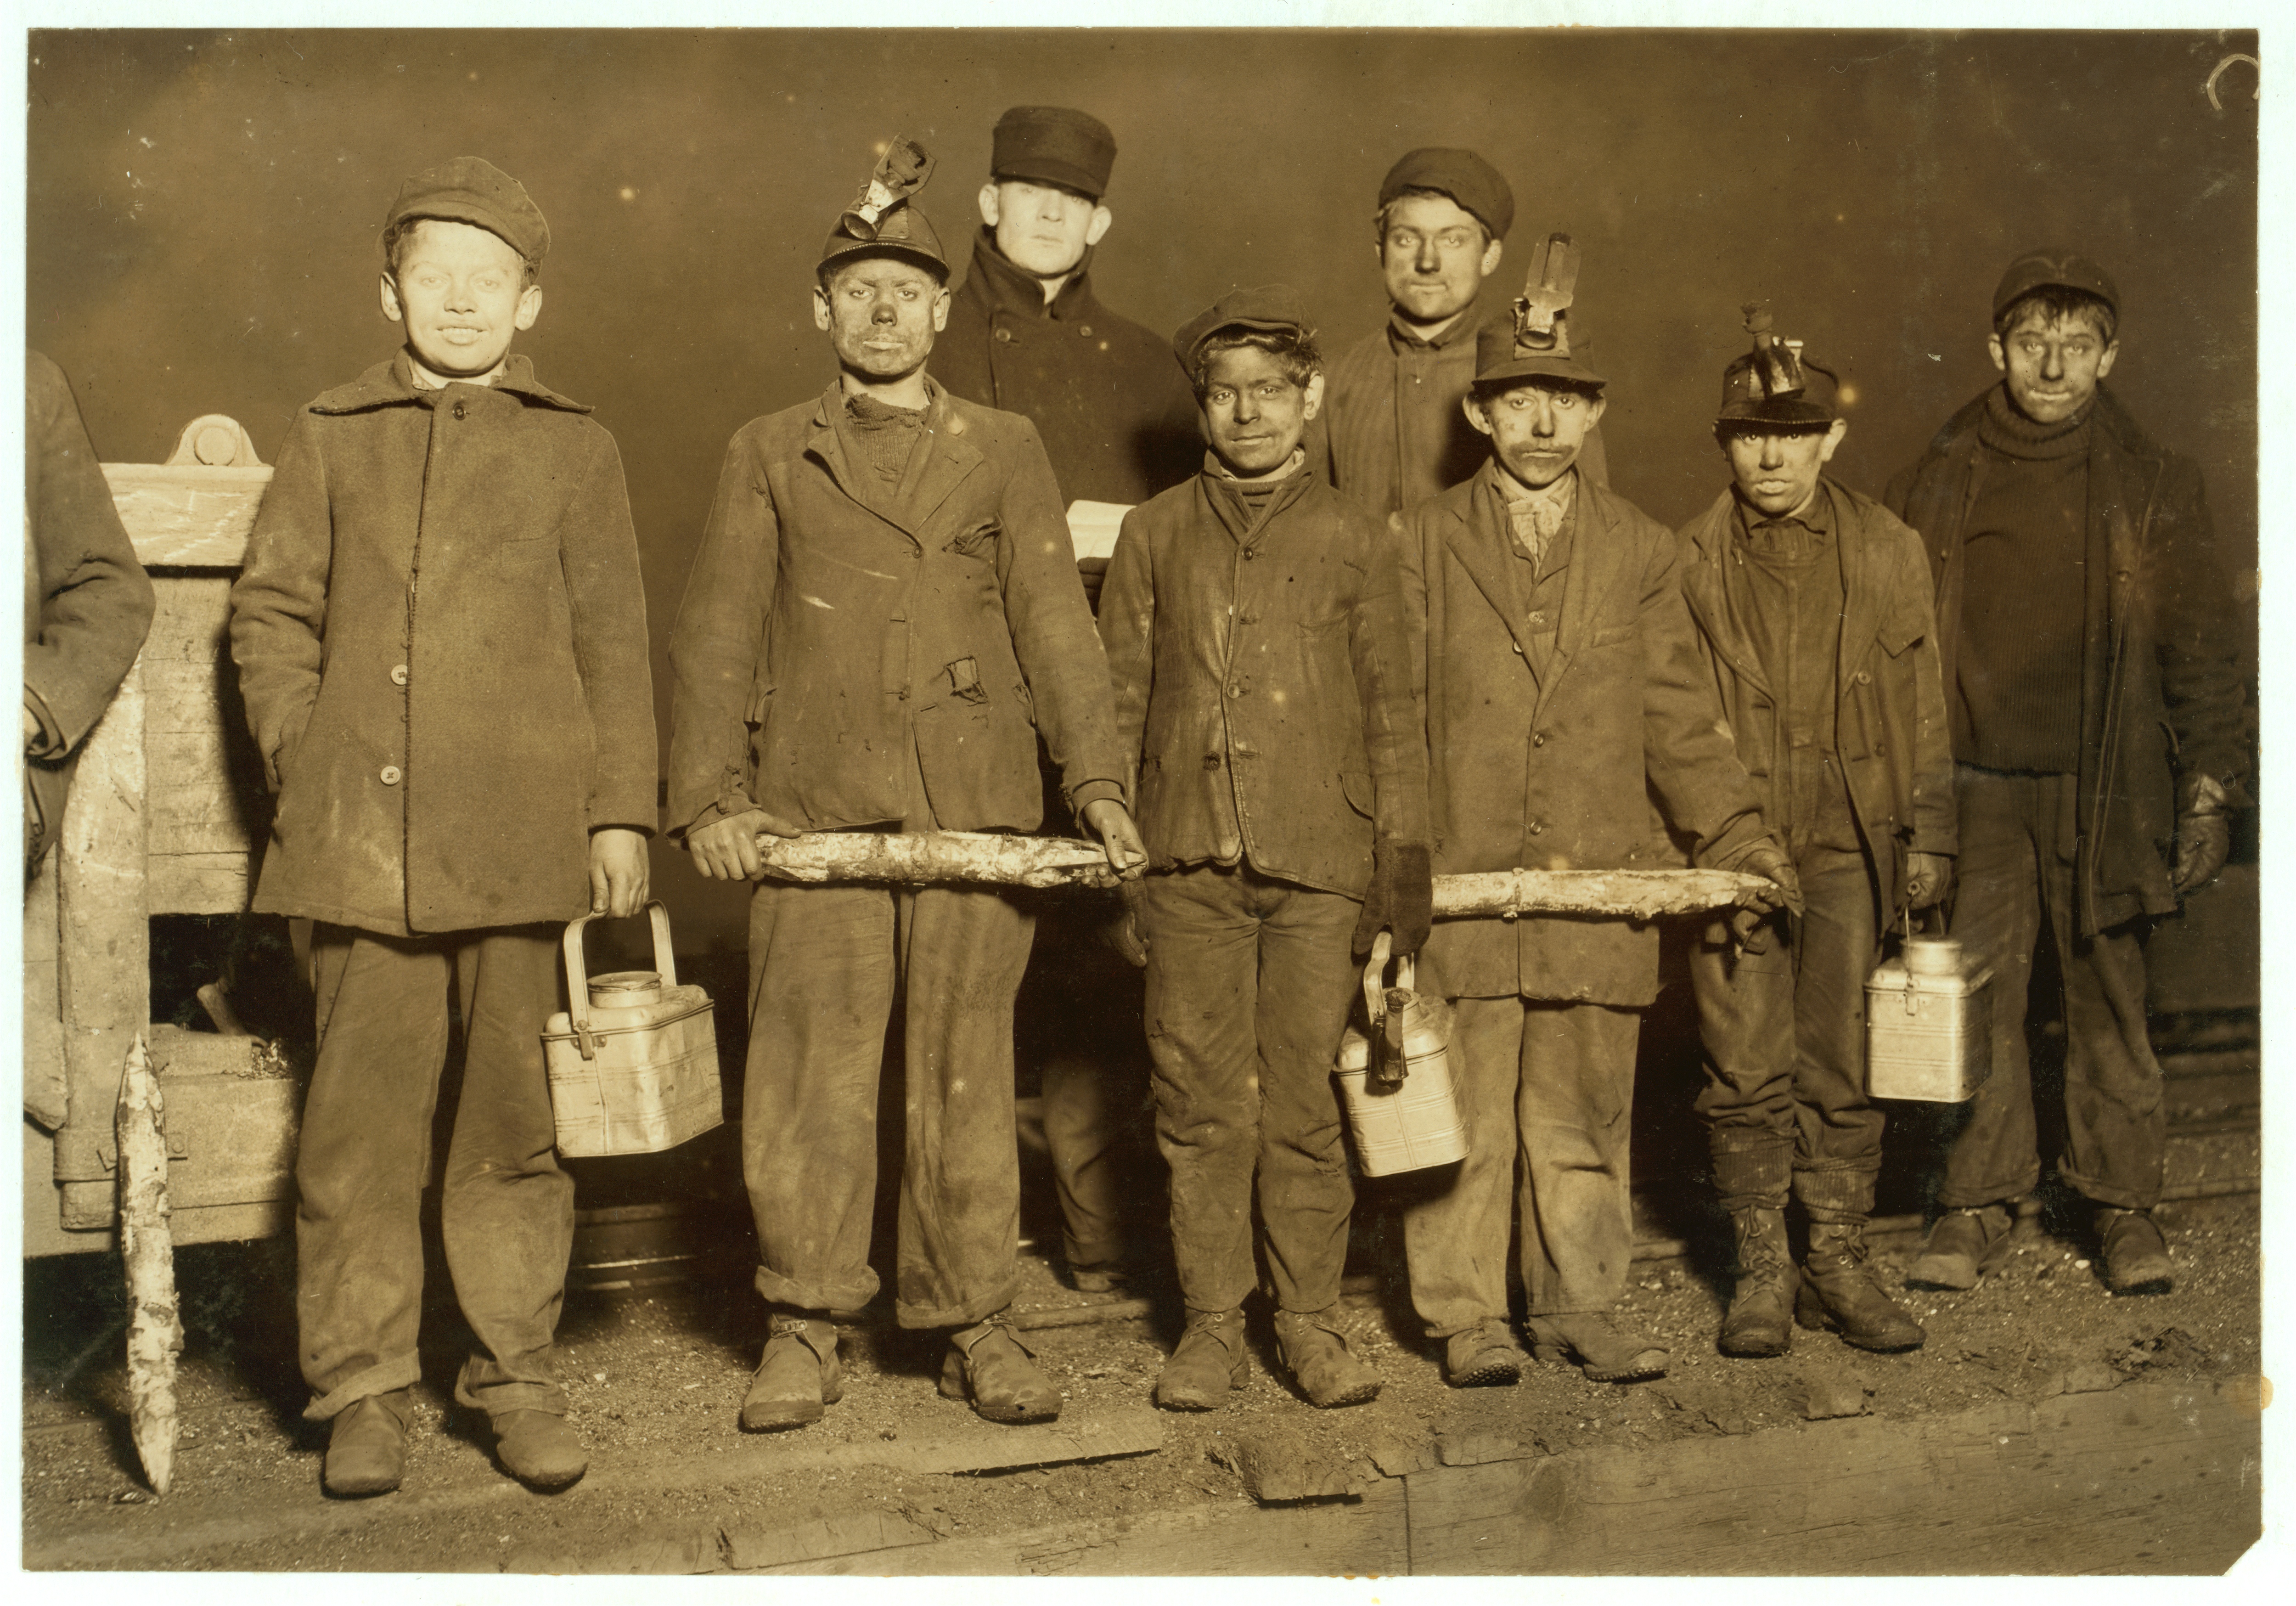 Как жил рабочий класс. Детский труд в США 1900 годы. Детский труд в США 20 век. Детский труд Англия 19 век в шахте. Детский труд на угольной шахте, Пенсильвания, январь 1911 года.